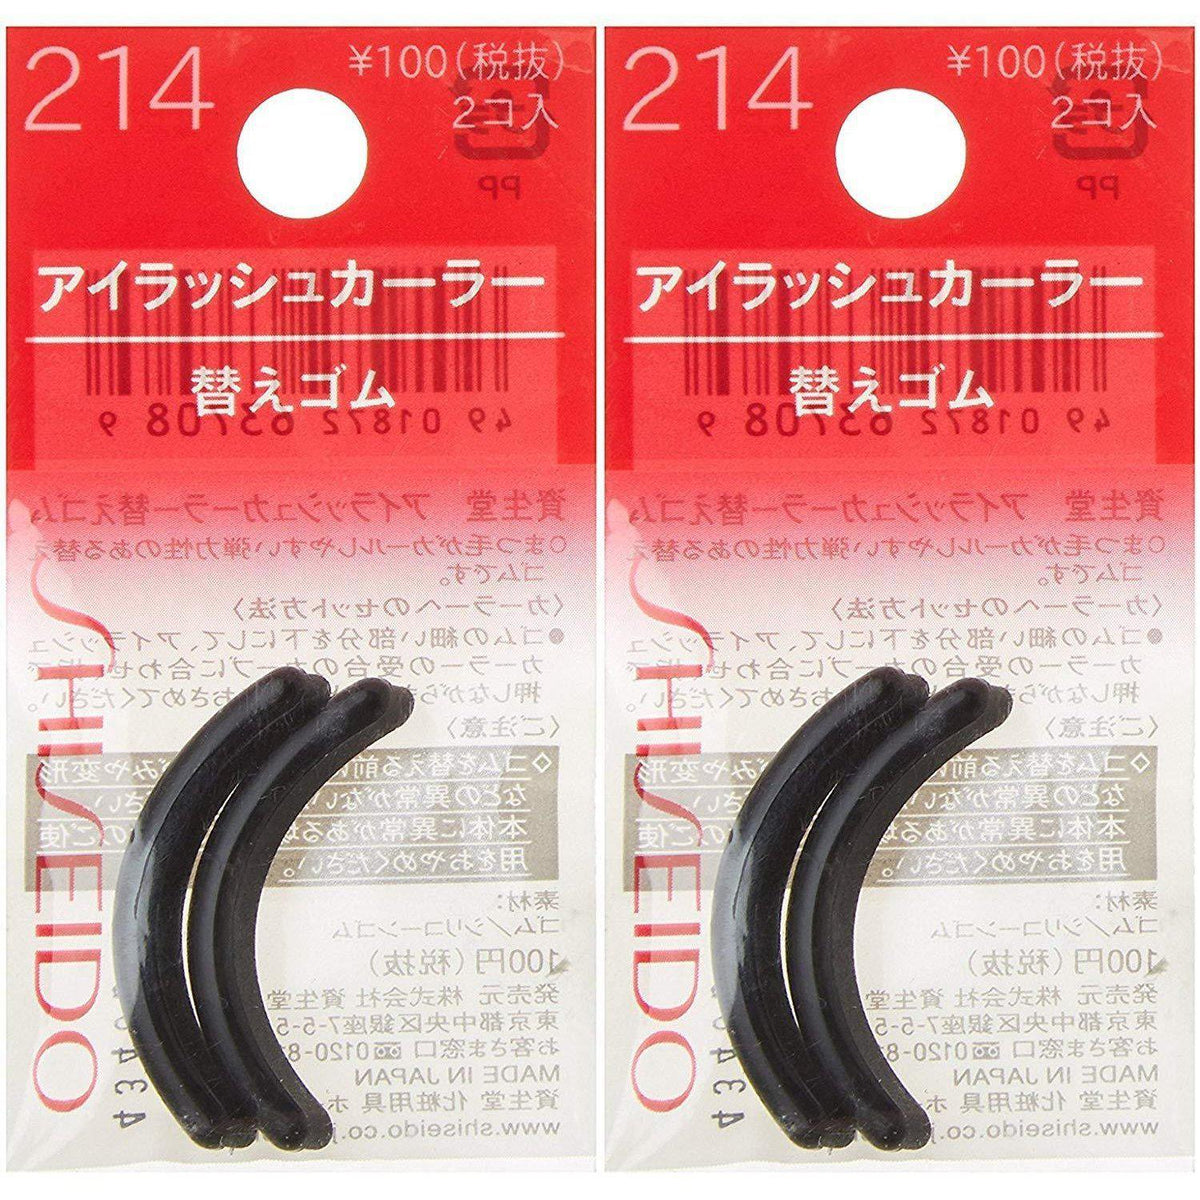 Shiseido Eyelash Curler Rubber Pad Refills 214 (Pack of 2